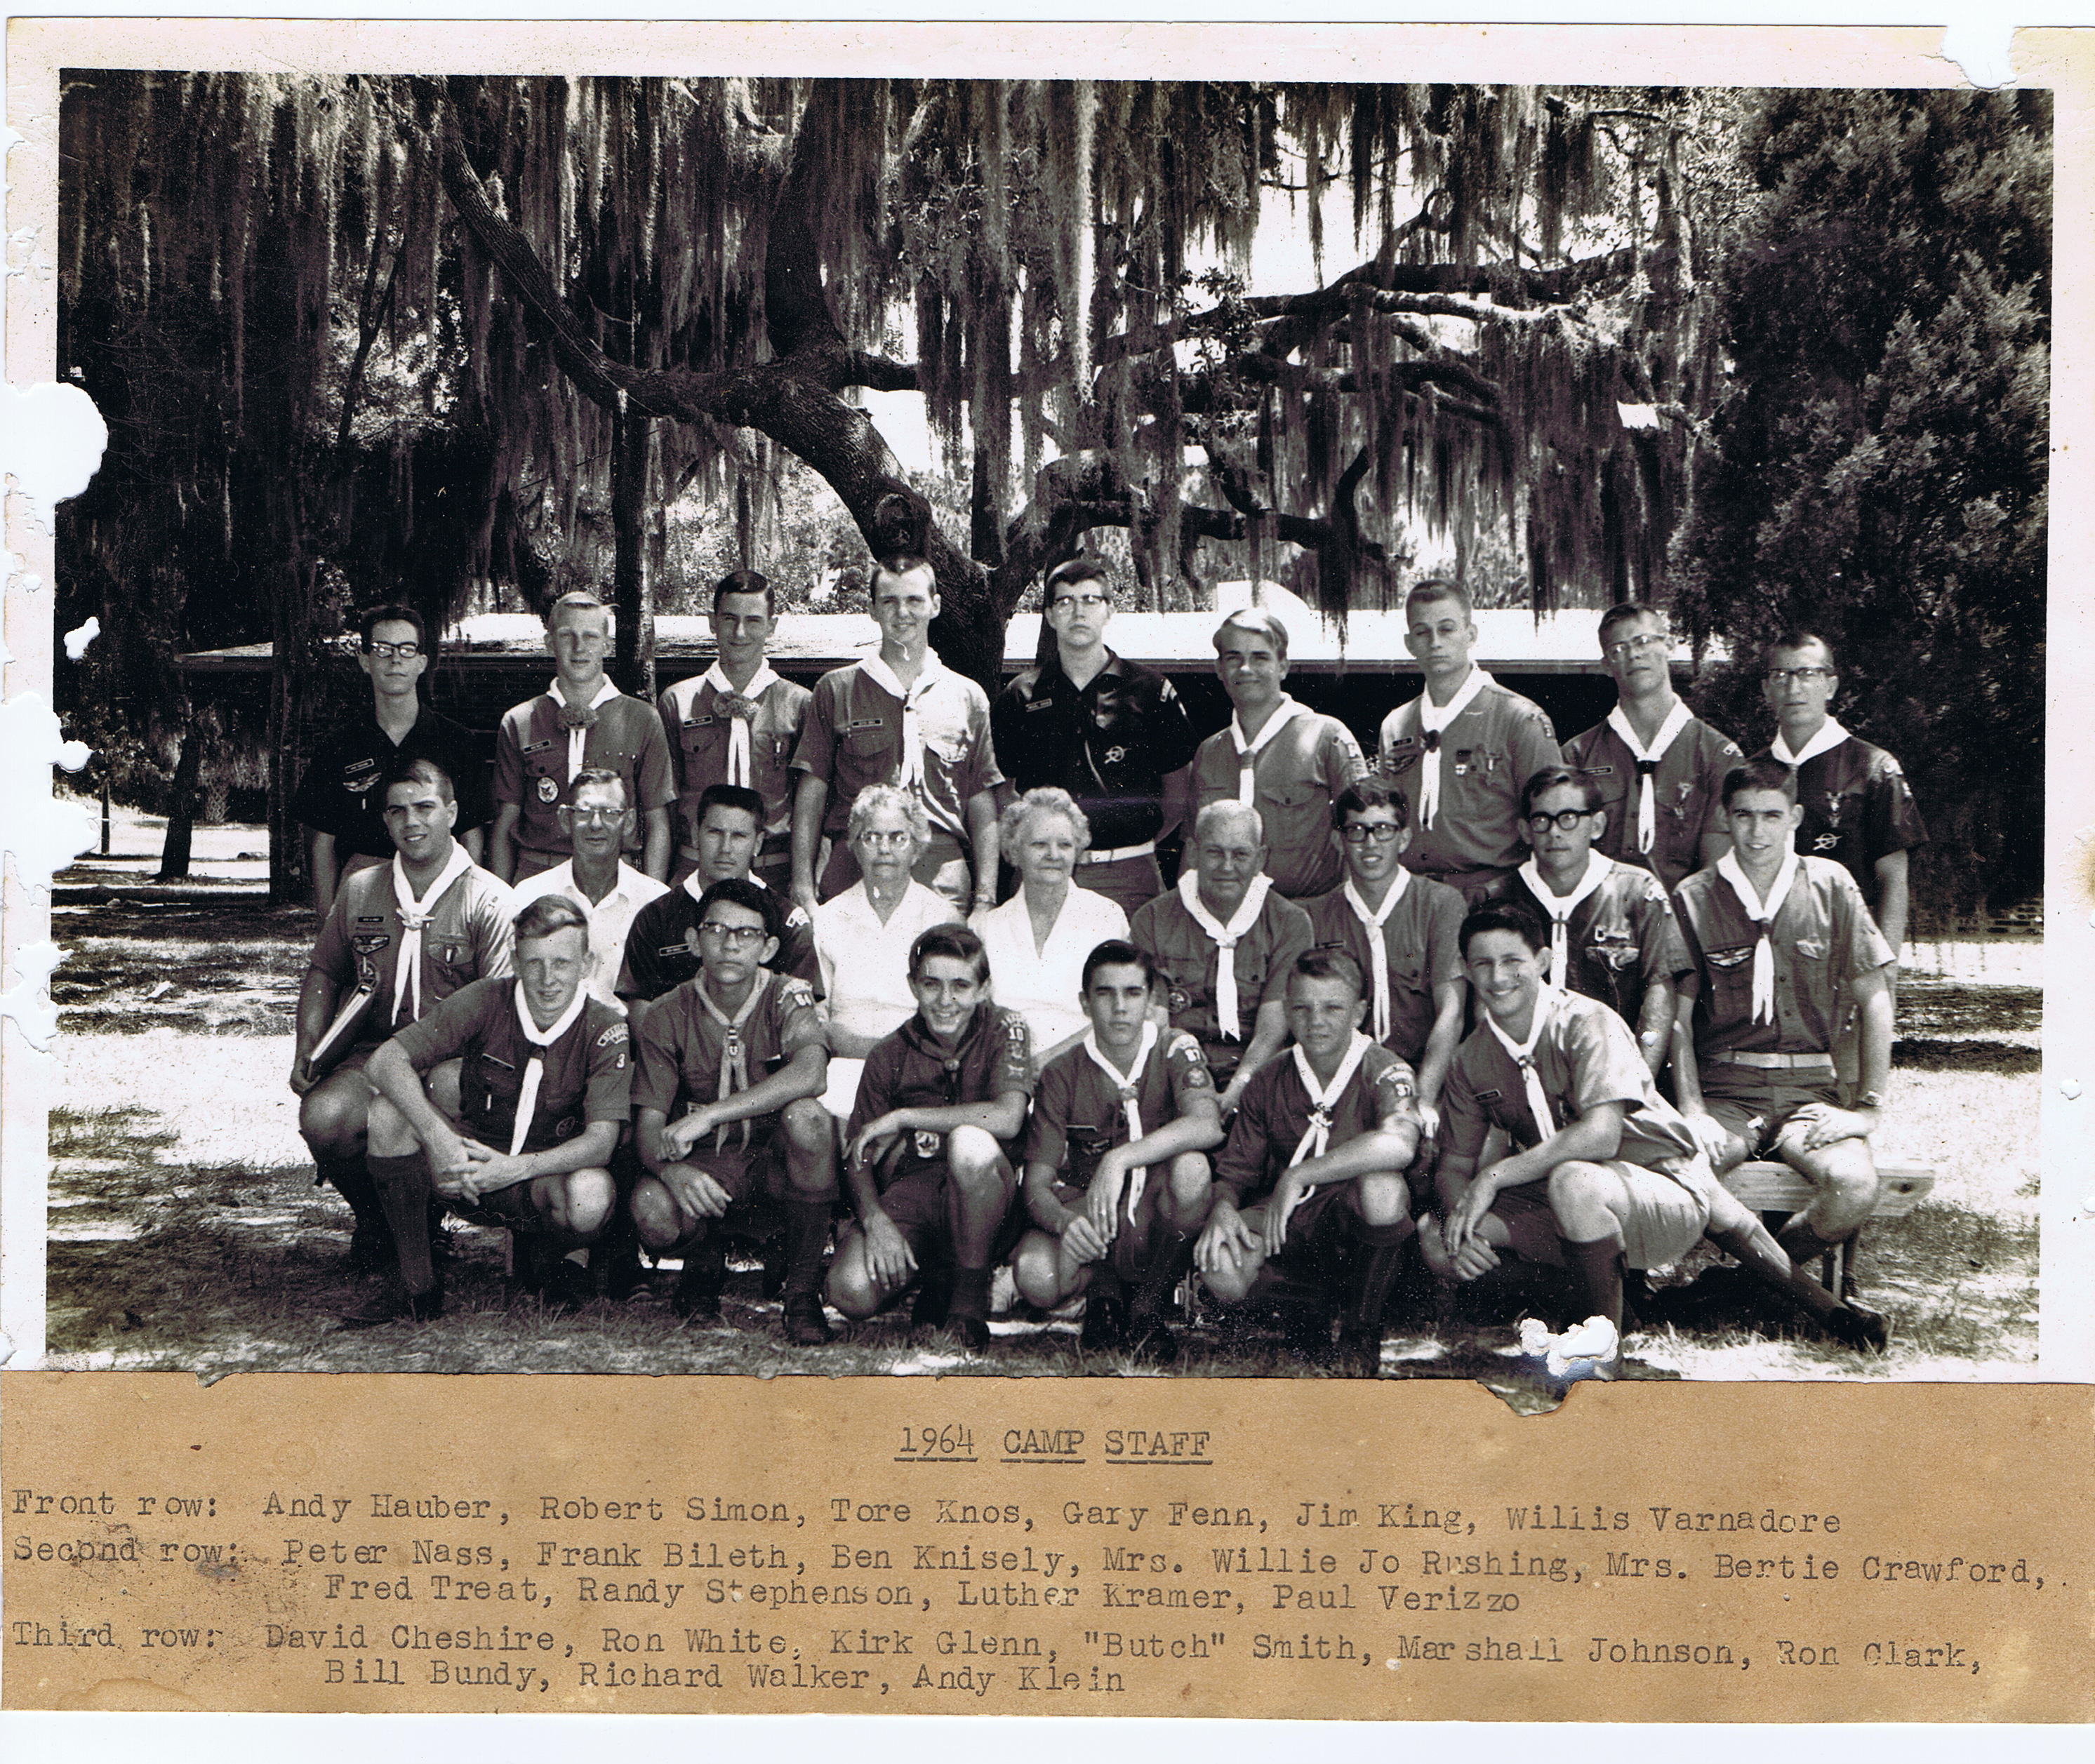 1964 Camp Staff